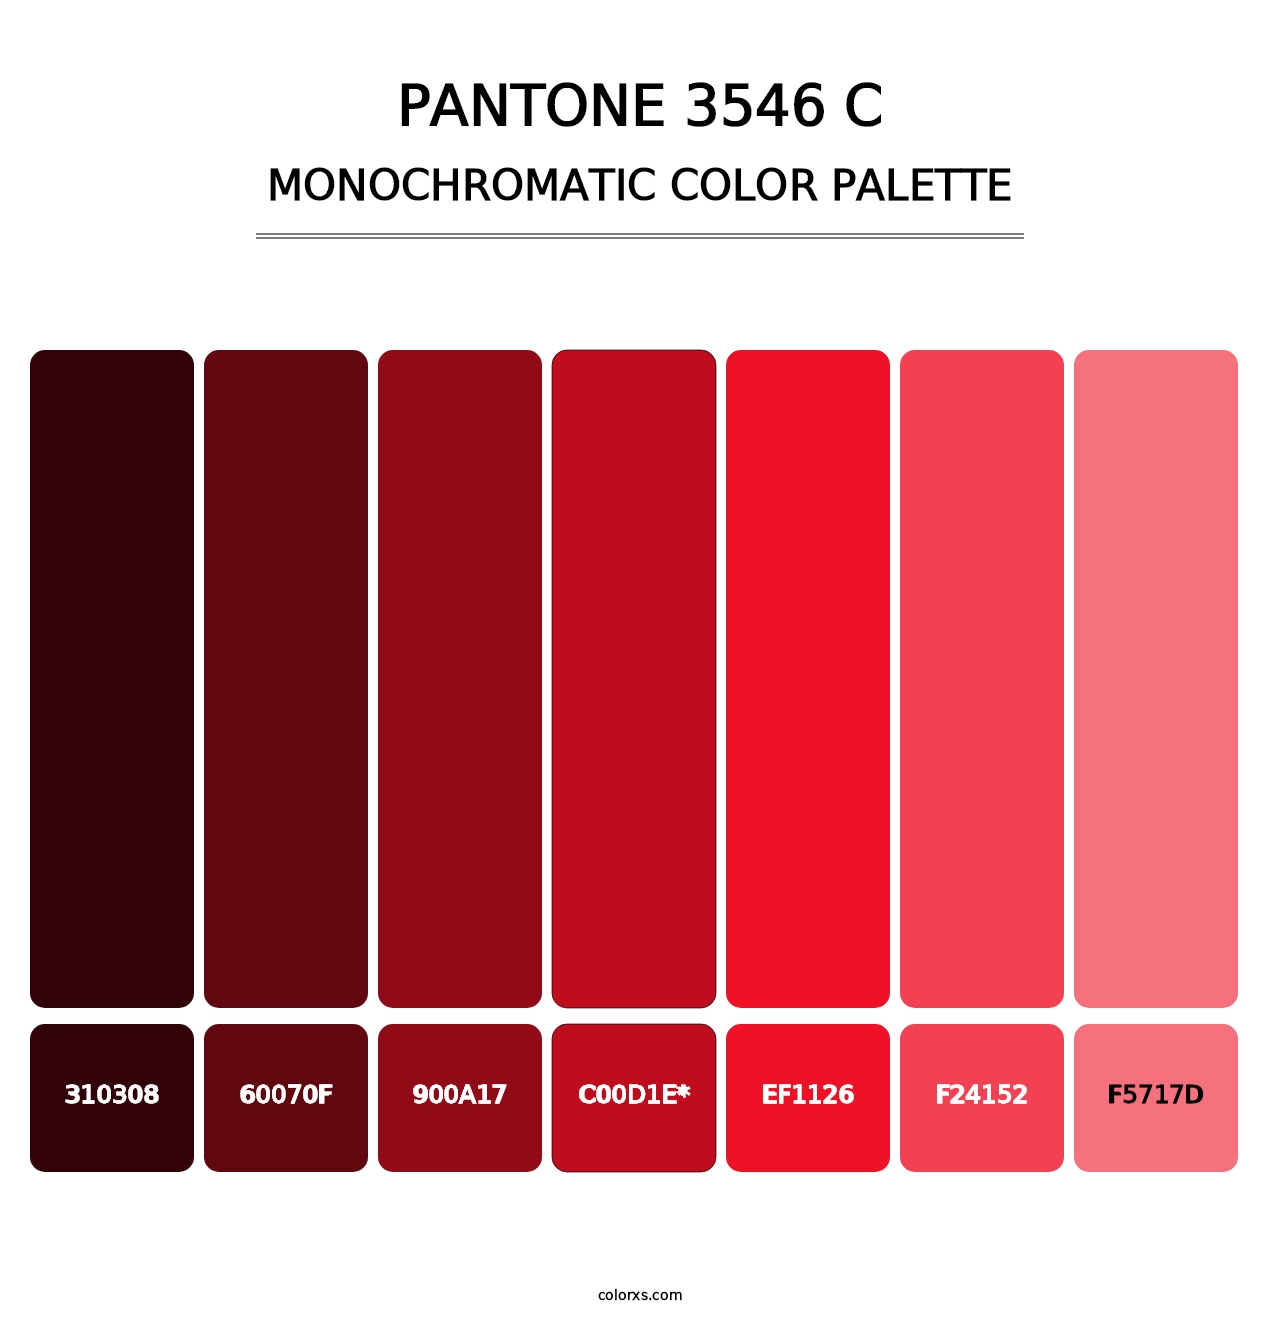 PANTONE 3546 C - Monochromatic Color Palette